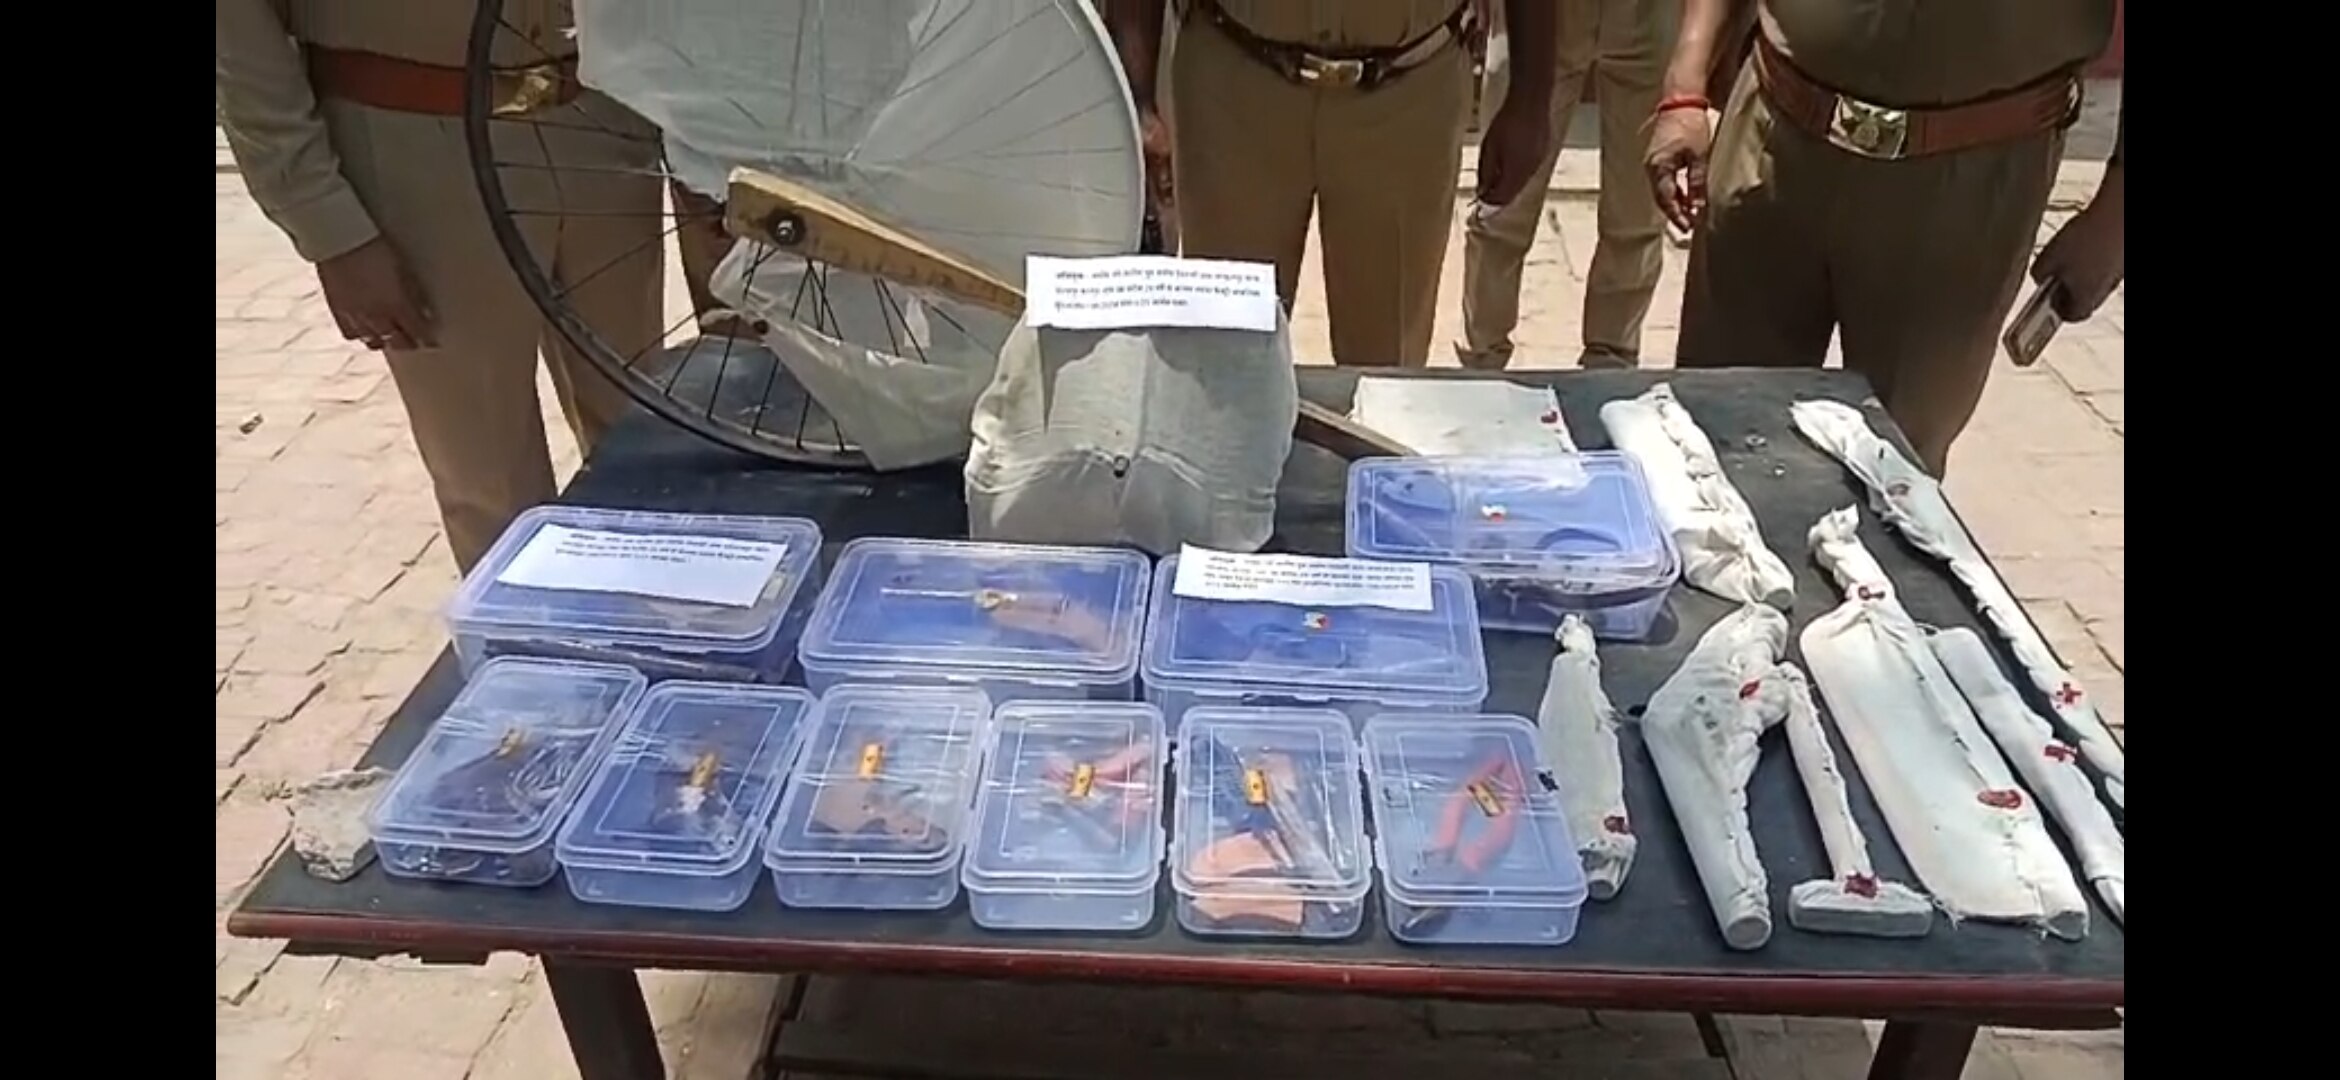 Kanpur News: लोकसभा चुनाव के बीच अवैध फैक्ट्री का भंडाफोड़, तमंचे बरामद, 1 गिरफ्तार